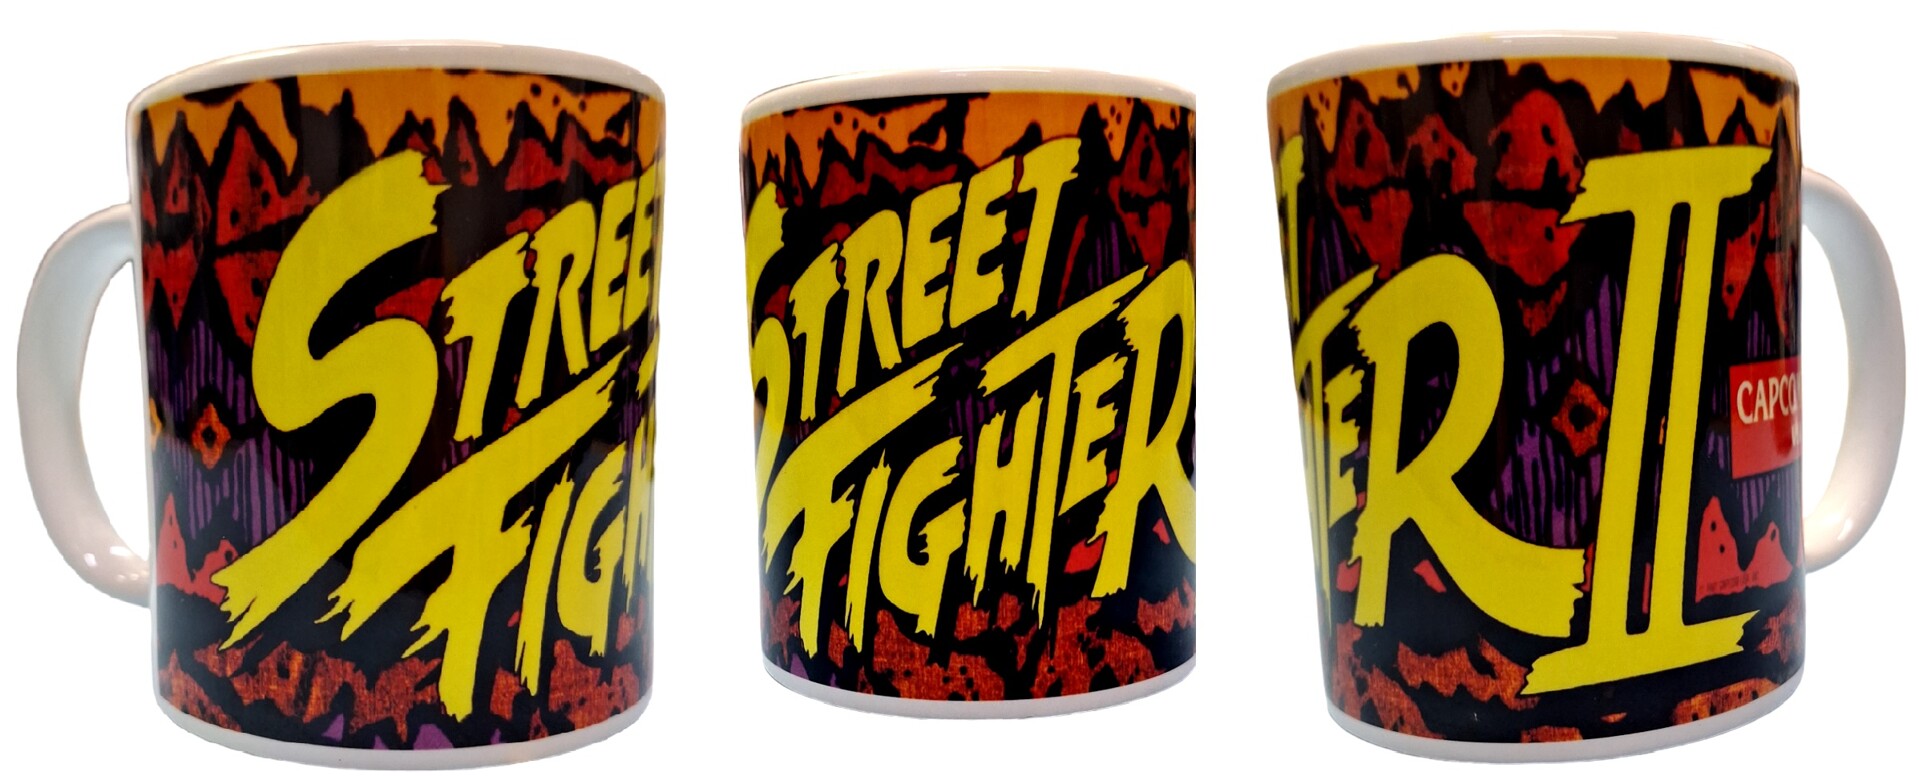 street fighter merch 